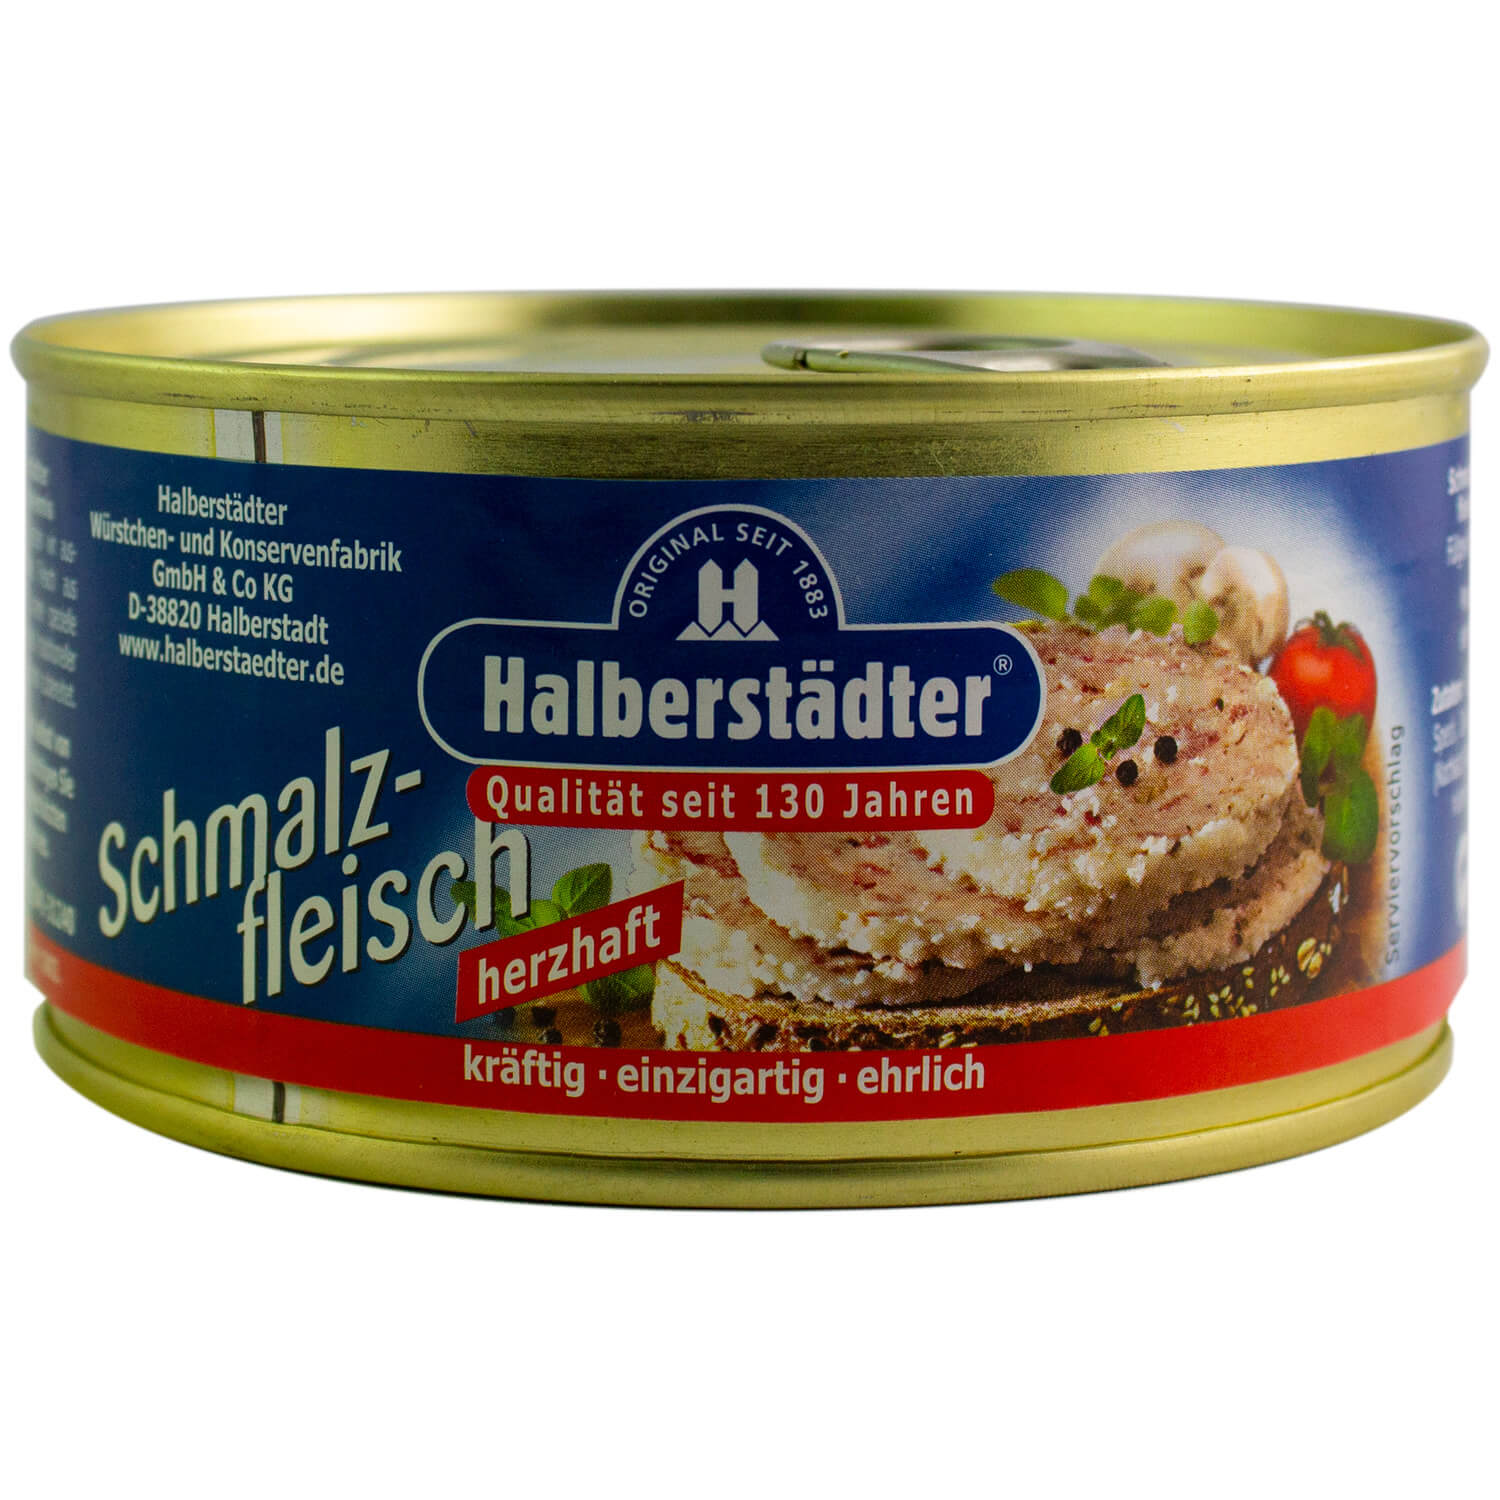 Ossikiste.de | Halberstädter Schmalzfleisch 300g | online kaufen